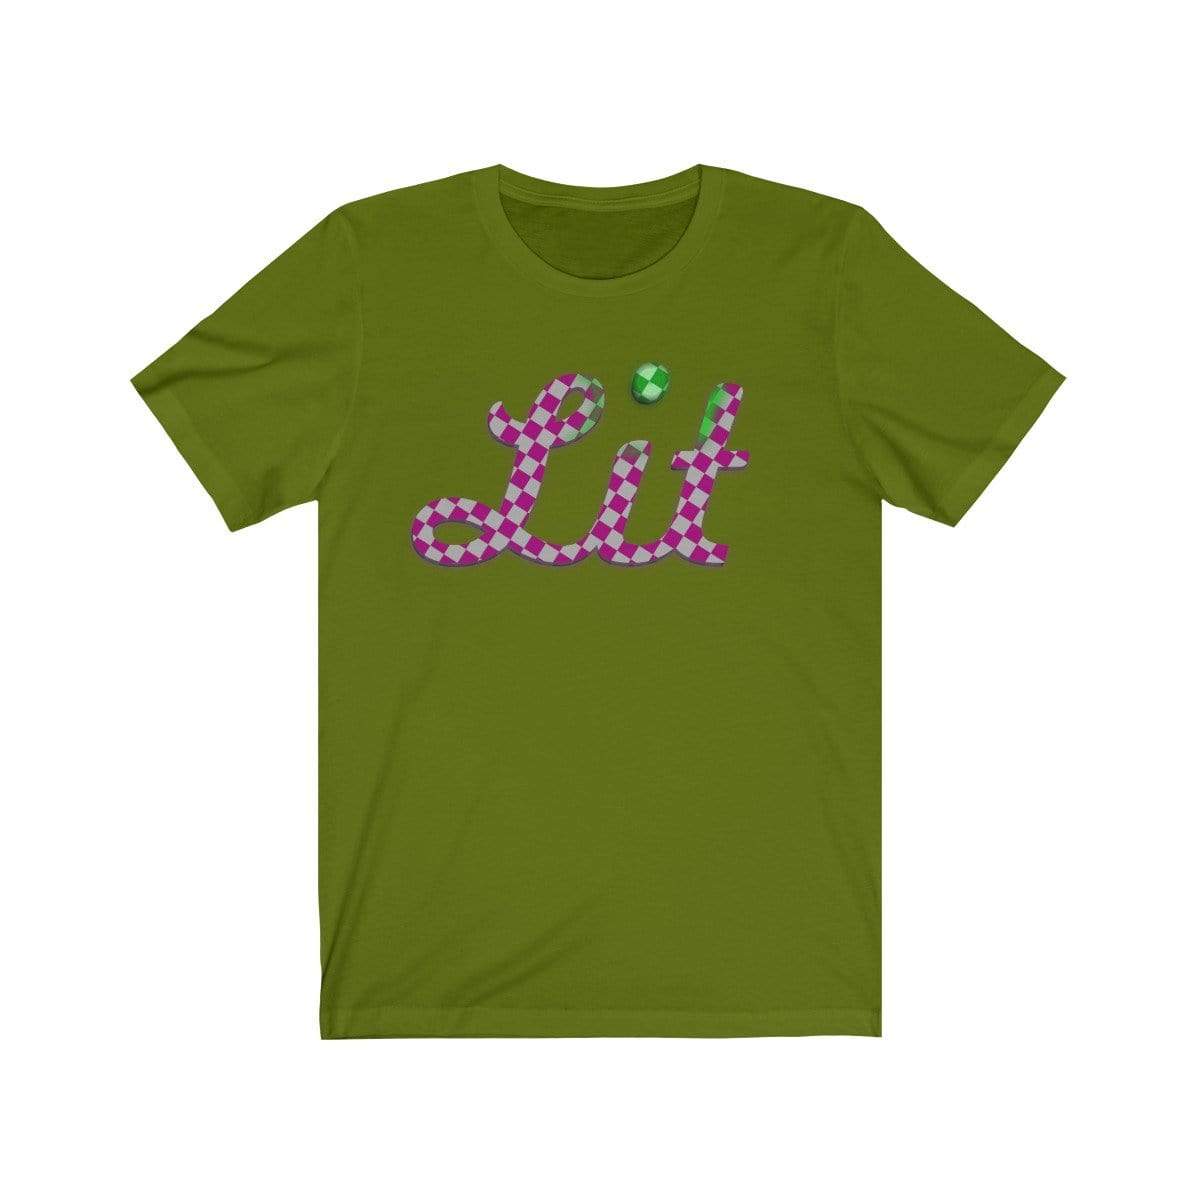 Plumskum T-Shirt Leaf / S Pink Checkered Lit T-shirt